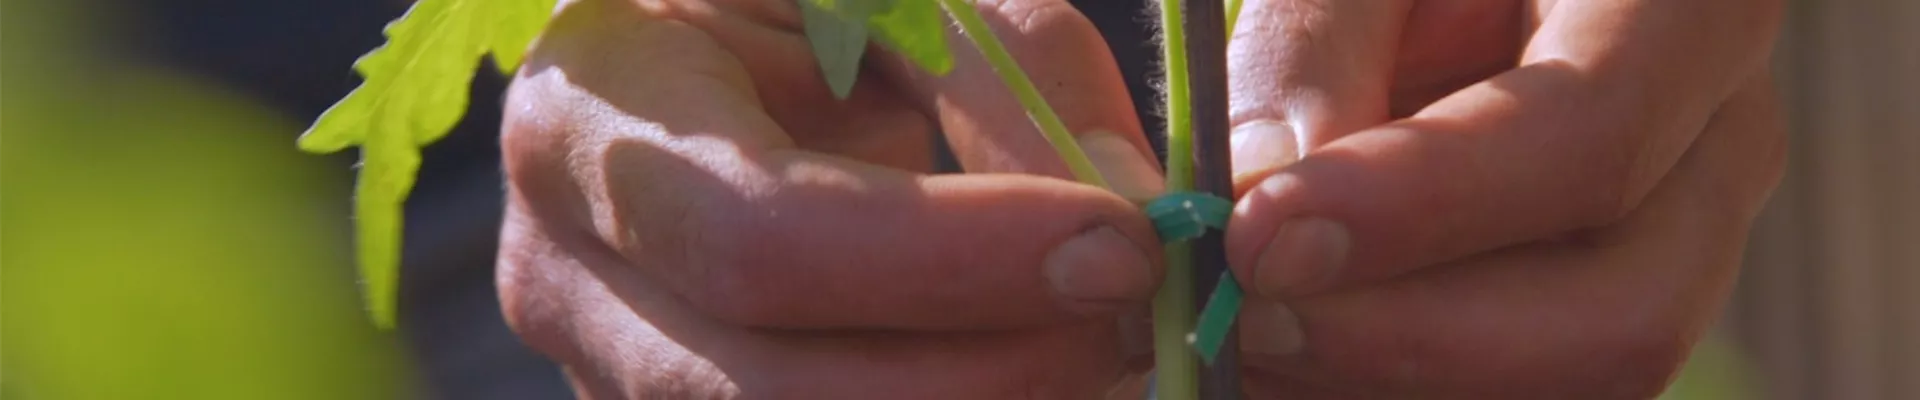 Romatomaten - Einpflanzen ins Gemüsebeet (Thumbnail).jpg